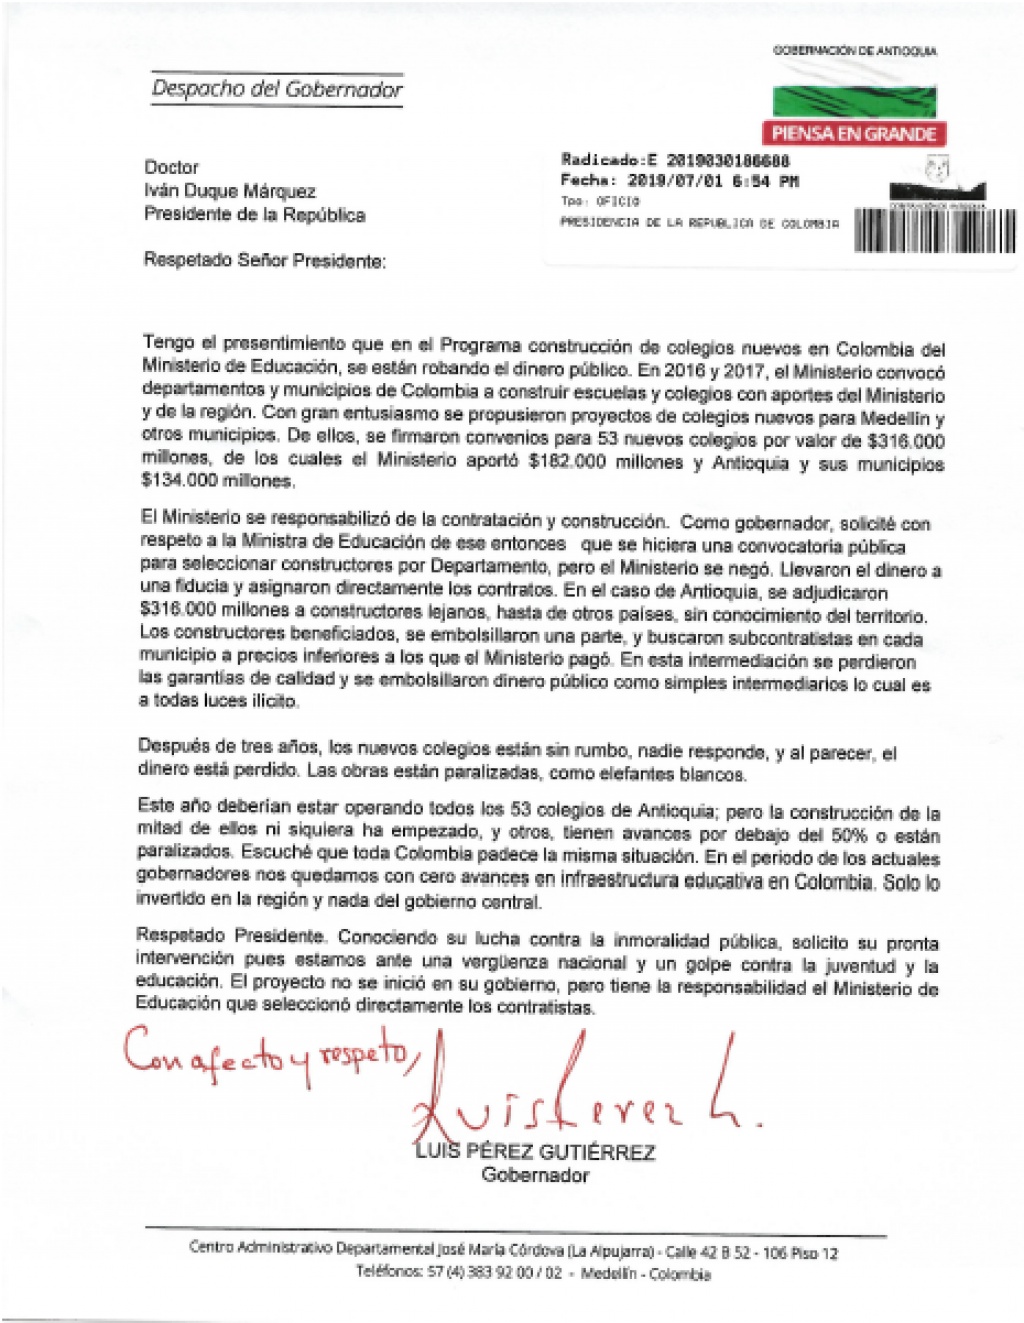 Carta del Gobernador Luis Pérez Gutiérrez, al Presidente de la República, sobre las irregularidades del Ministerio de Educación y los contratistas, en la construcción de 53 megacolegios en Antioquia.